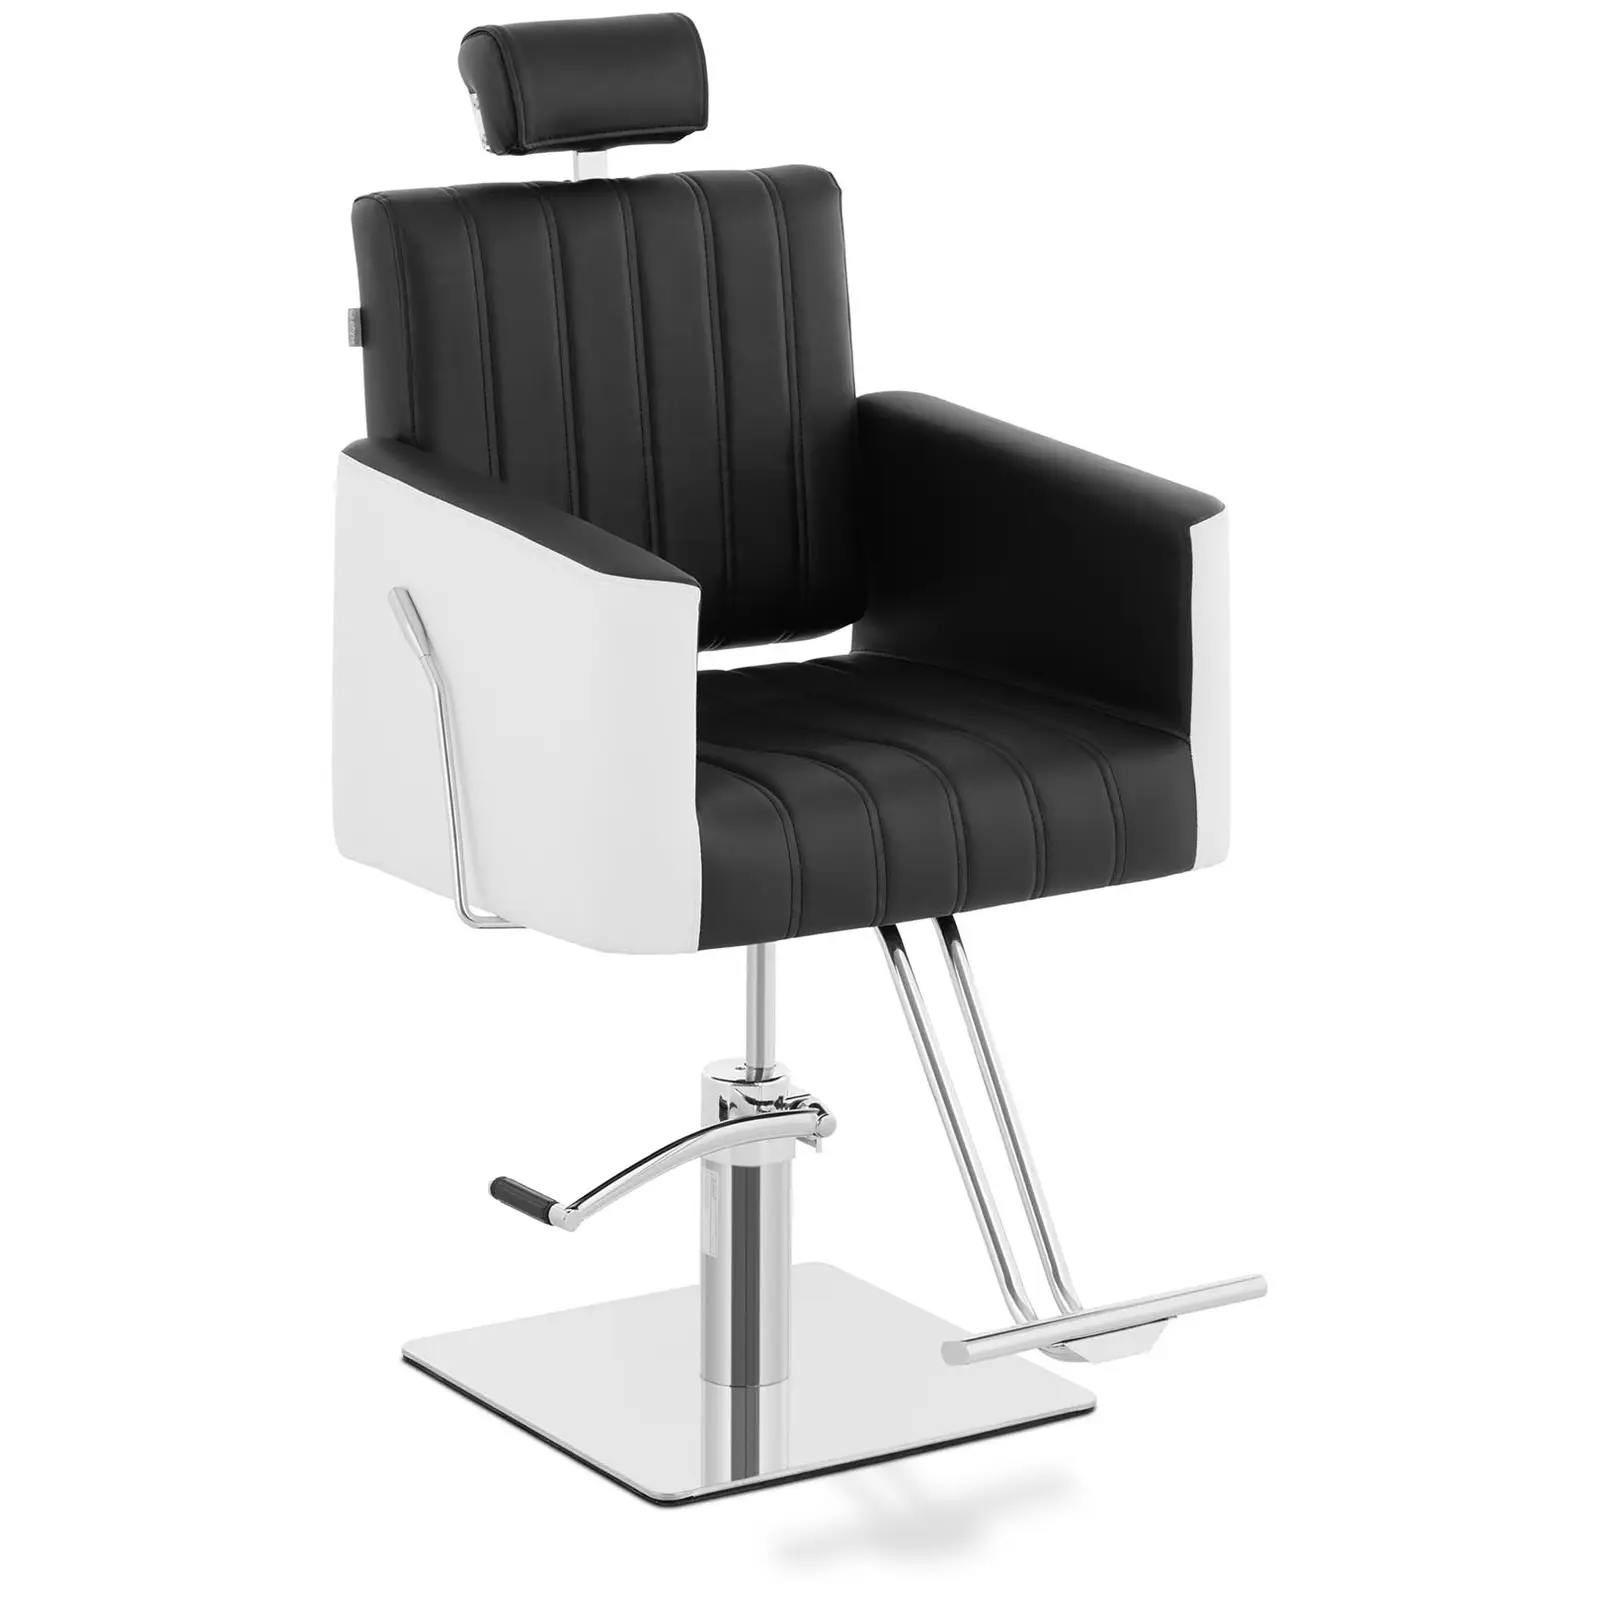 Salonska stolica s osloncem za noge - 470 x 630 mm - 150 kg - crna, bijela